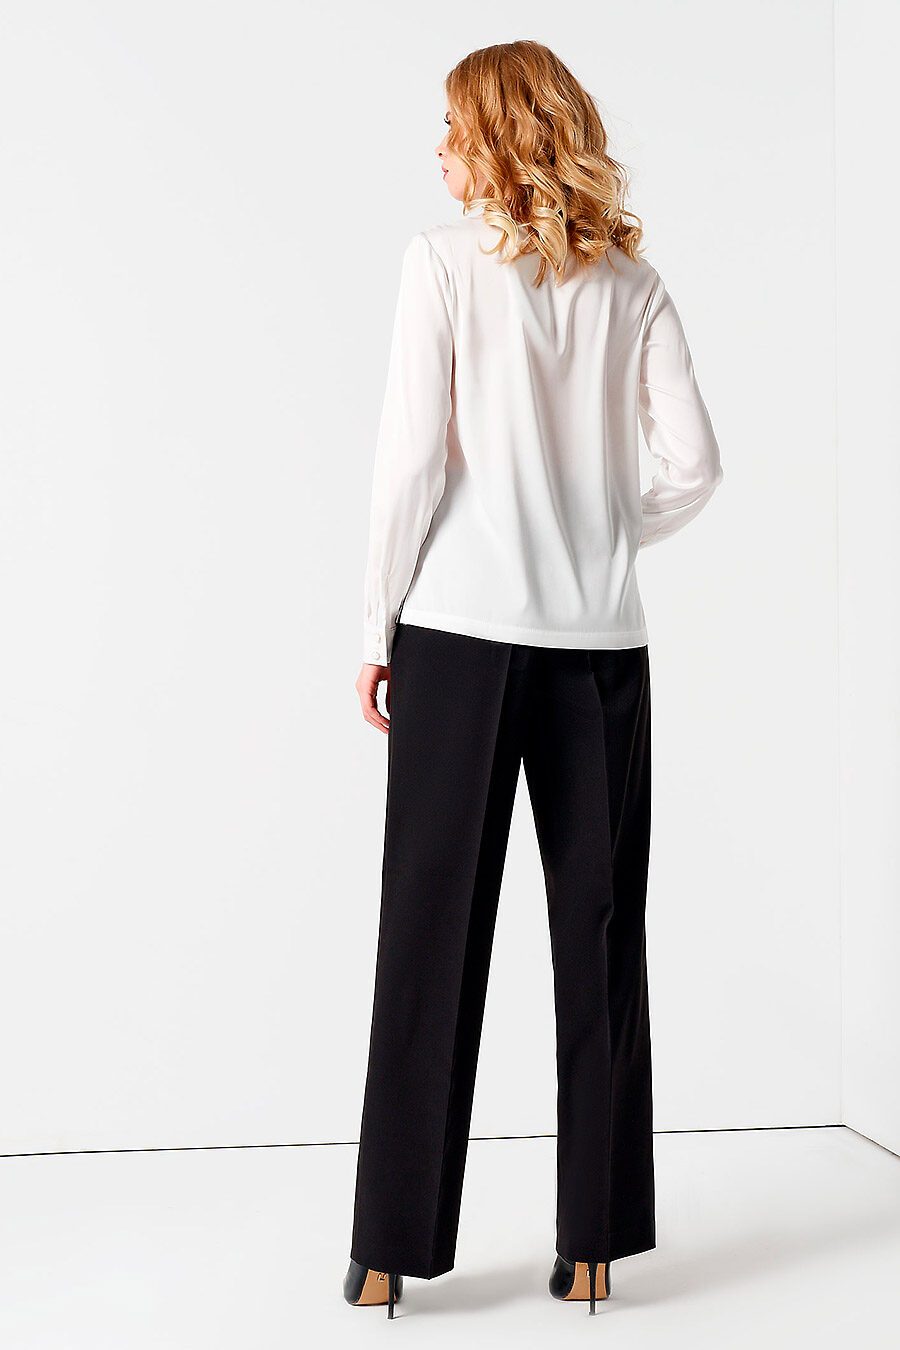 Блуза для женщин PANDA 741316 купить оптом от производителя. Совместная покупка женской одежды в OptMoyo